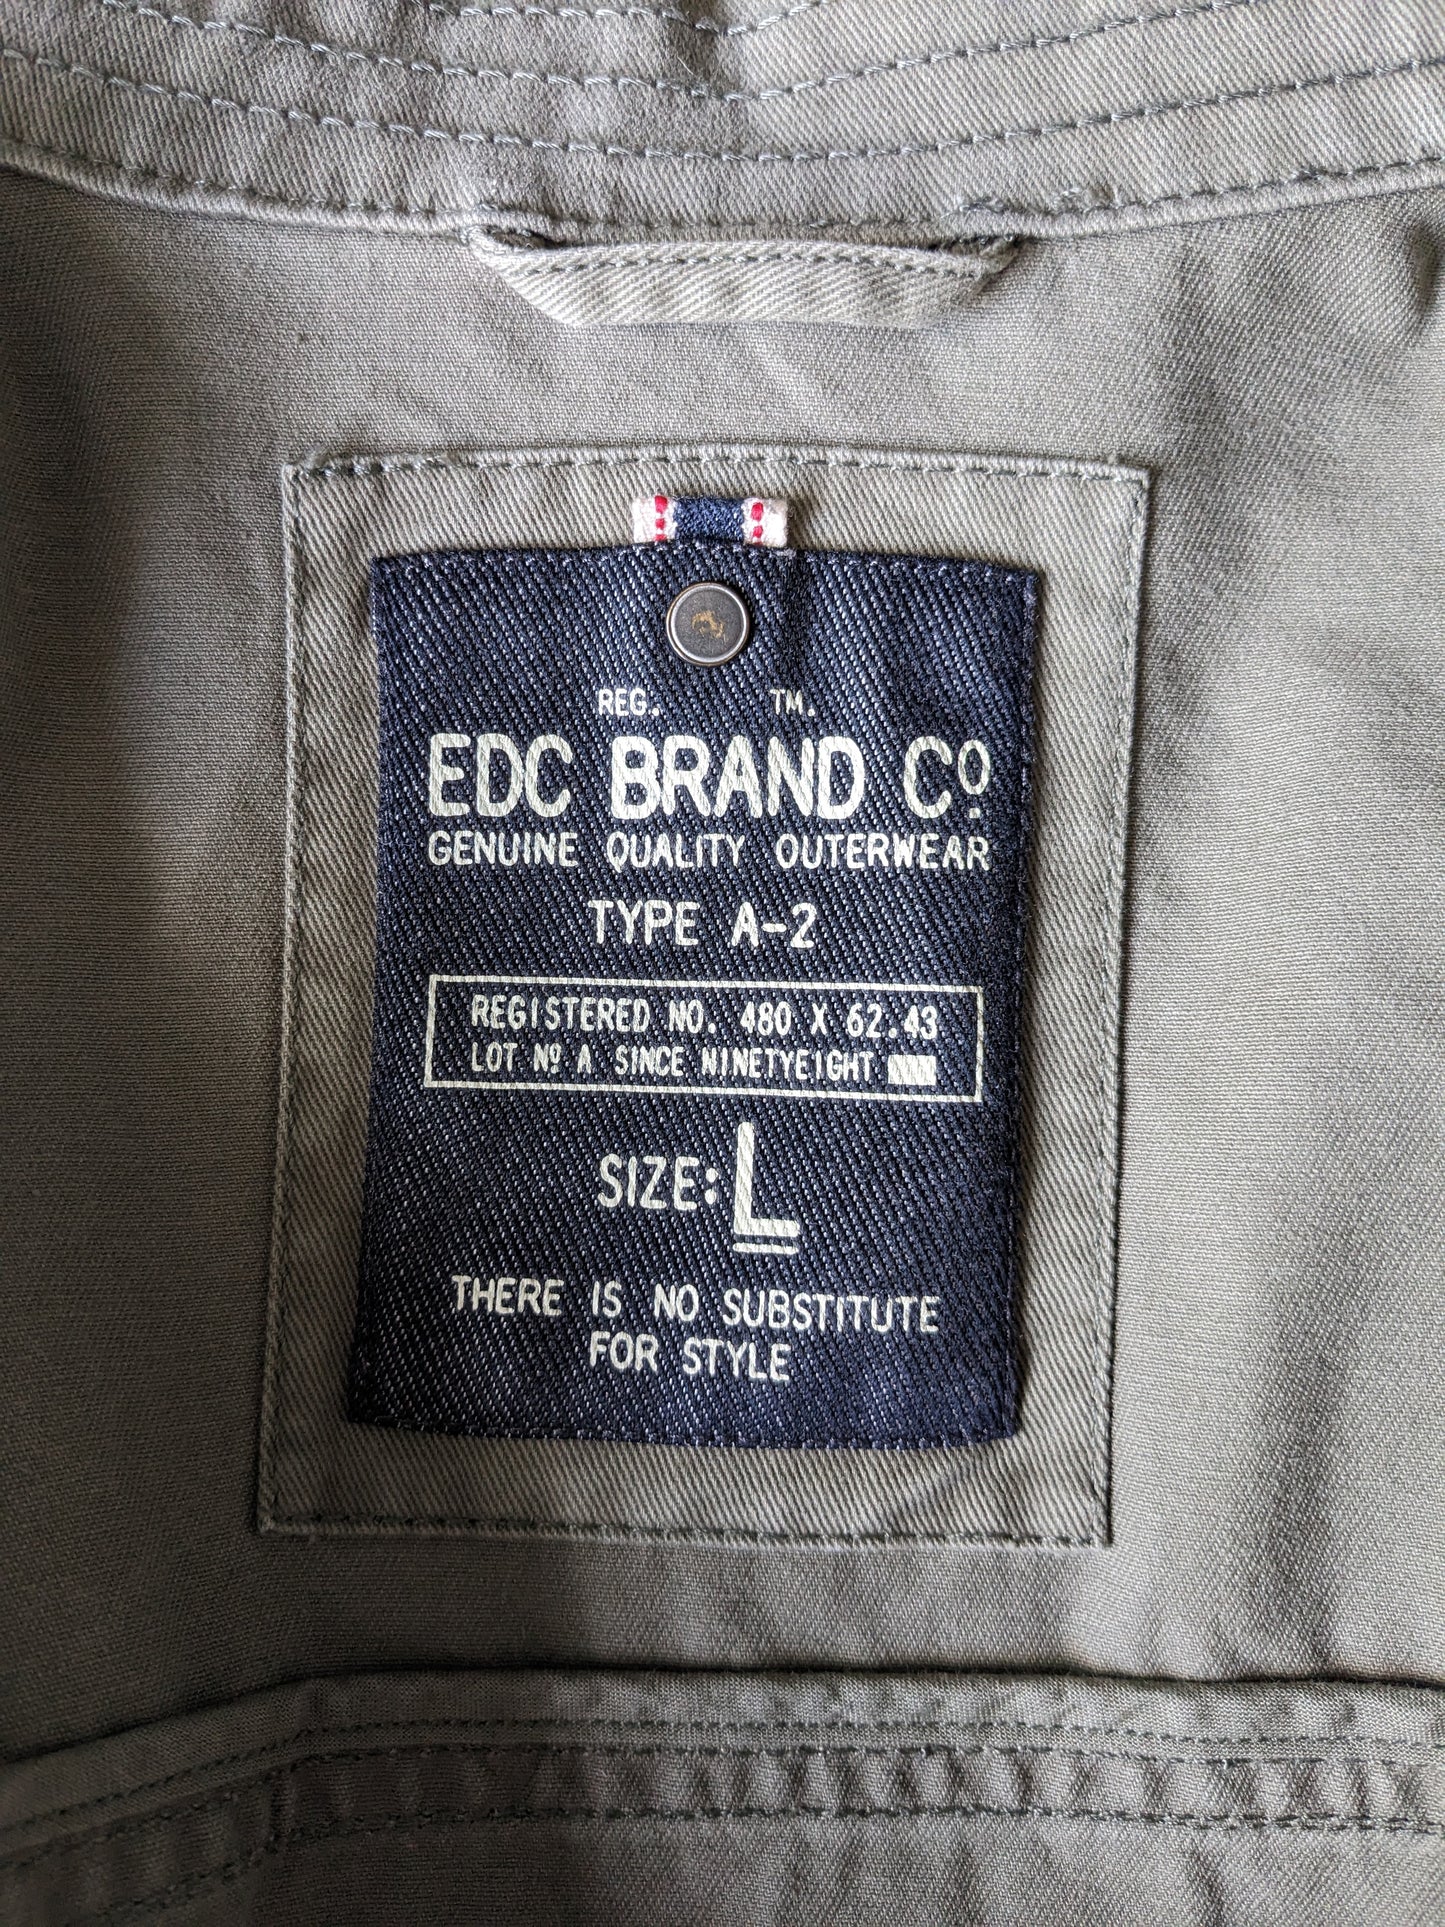 Chaqueta / chaqueta de verano EDC con botones. Verde color. Talla L.